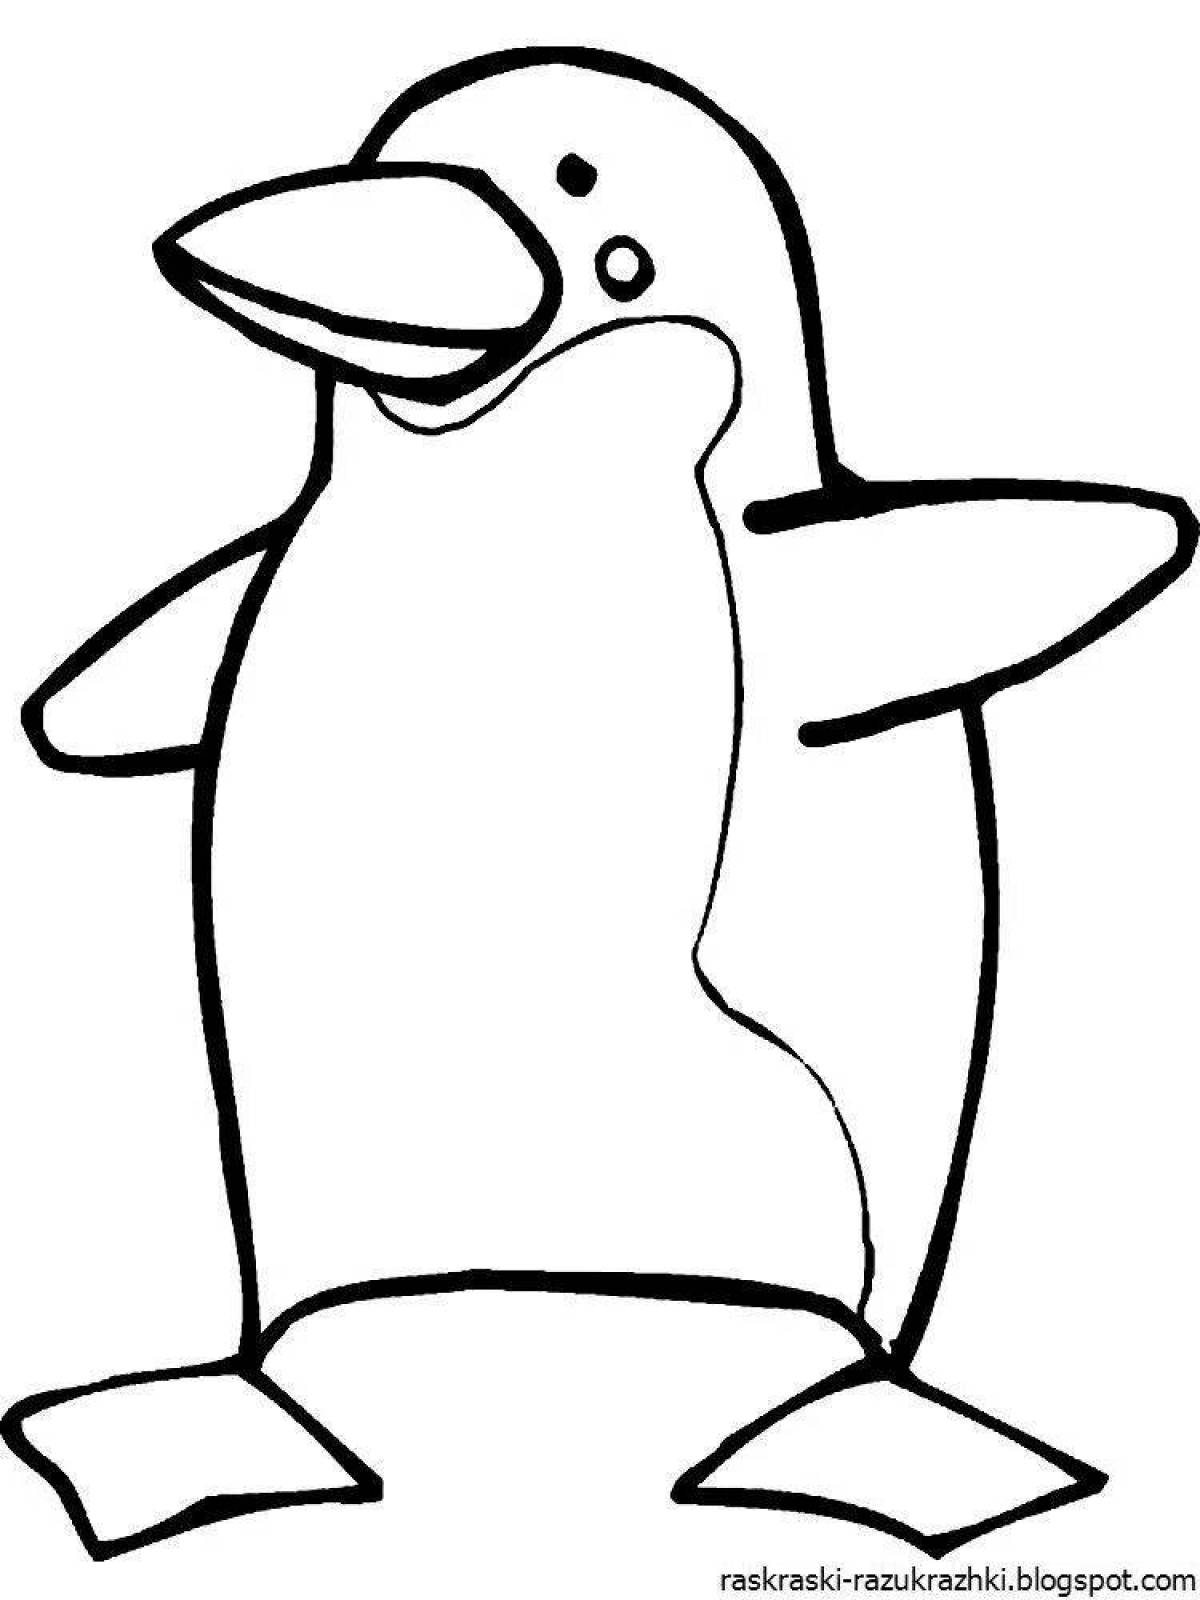 Развлекательный рисунок пингвина для детей